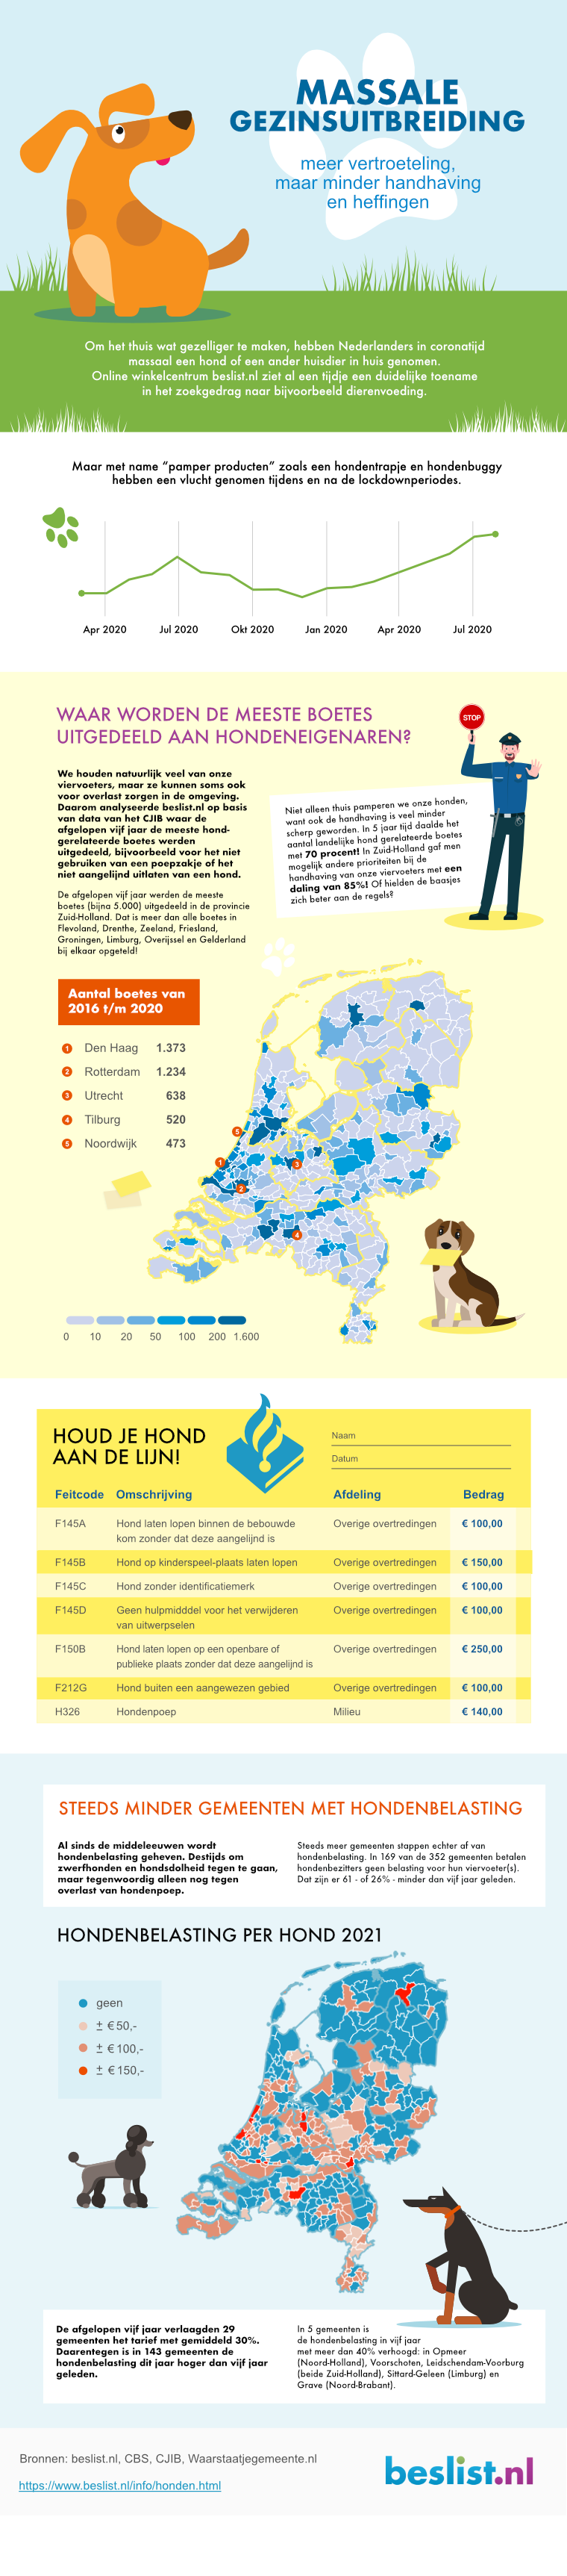 Minder hondgerelateerde boetes ( Bron:Beslist.nl)